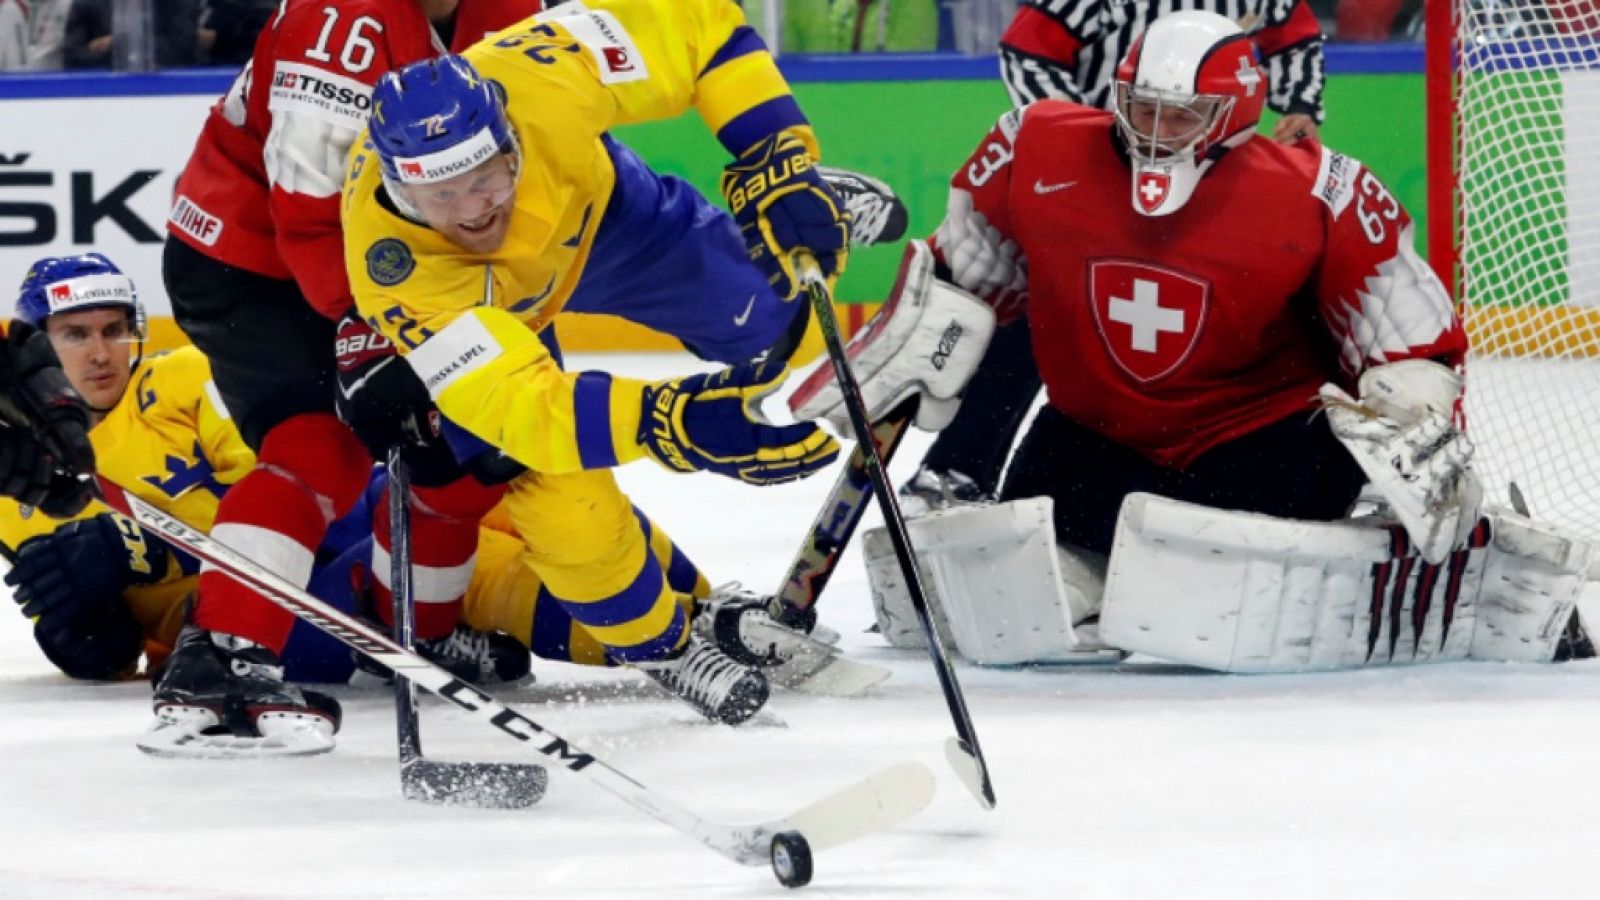 Hockey Hielo - Campeonato del Mundo. Final: Suecia - Suiza